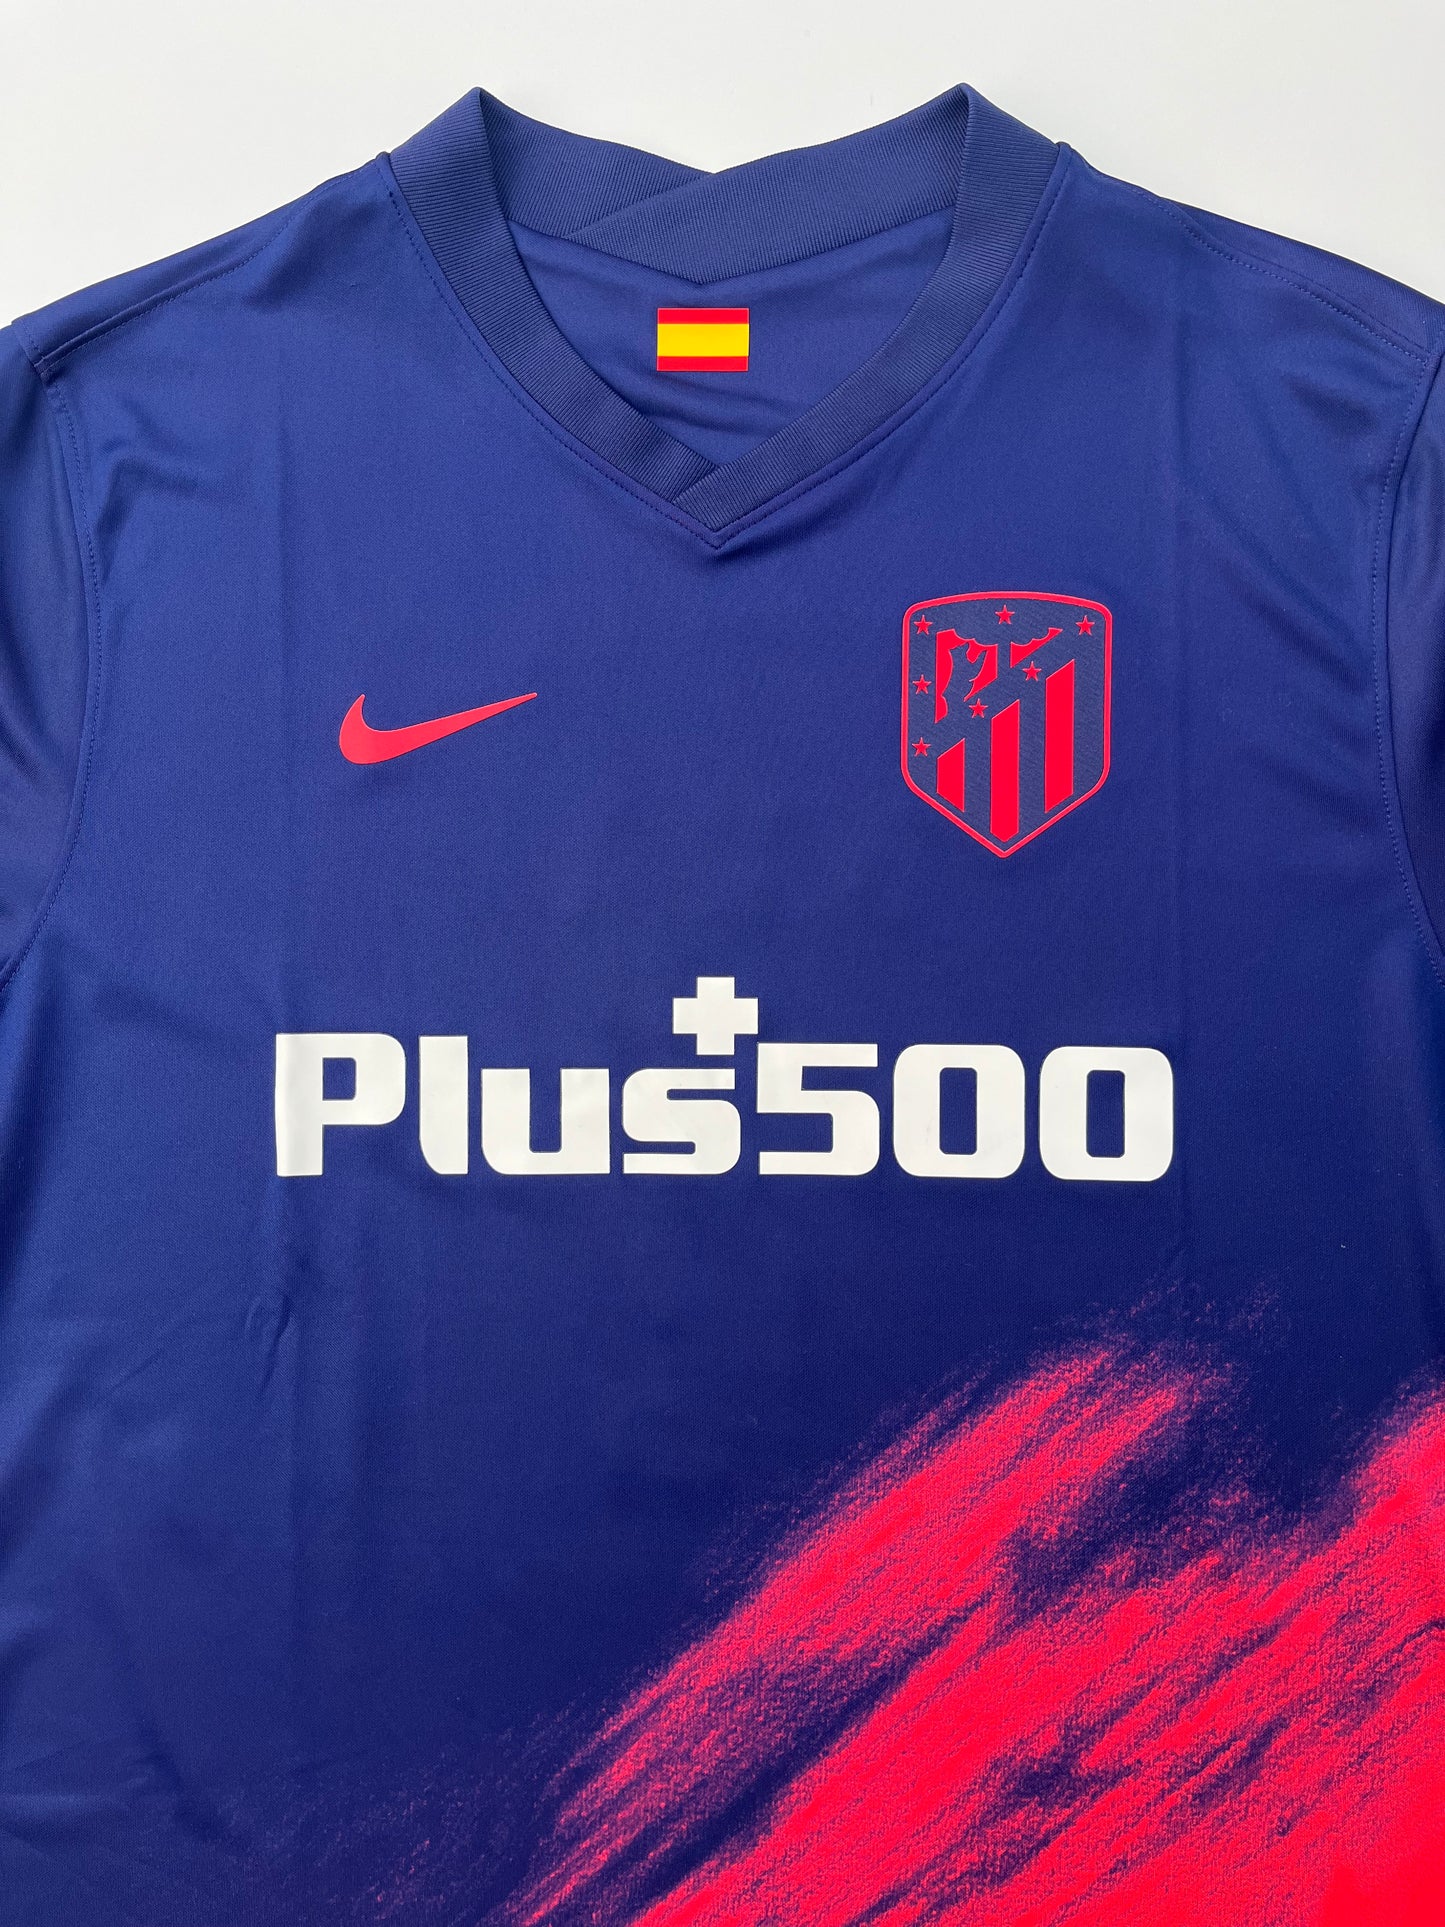 Jersey Atlético de Madrid Visita 2021 2022 Joäo Félix (XL)